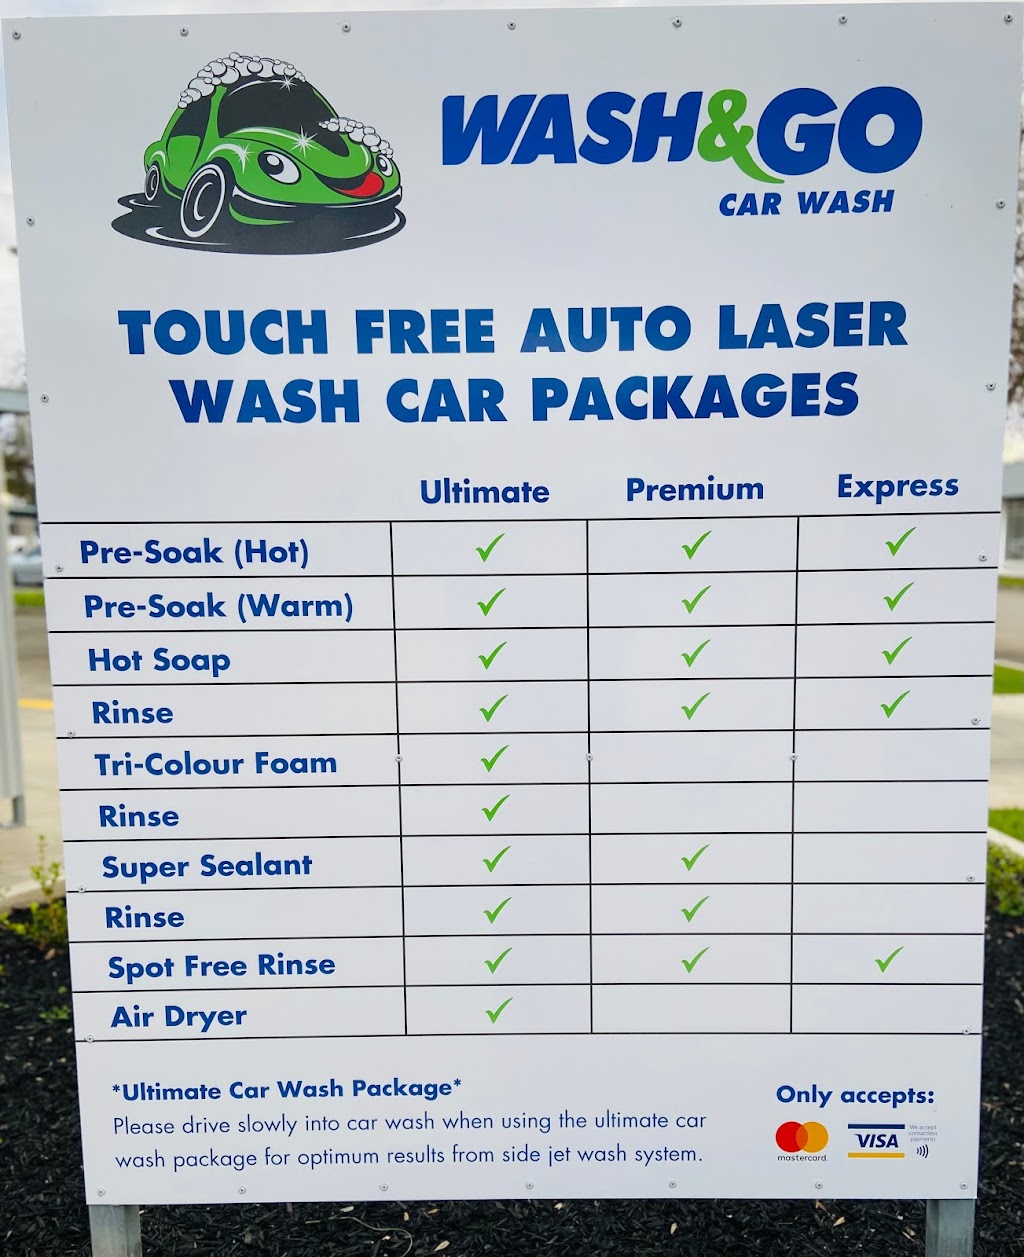 Wash and Go Car Wash | 9 Chapman St, Swan Hill VIC 3585, Australia | Phone: 0455 633 757